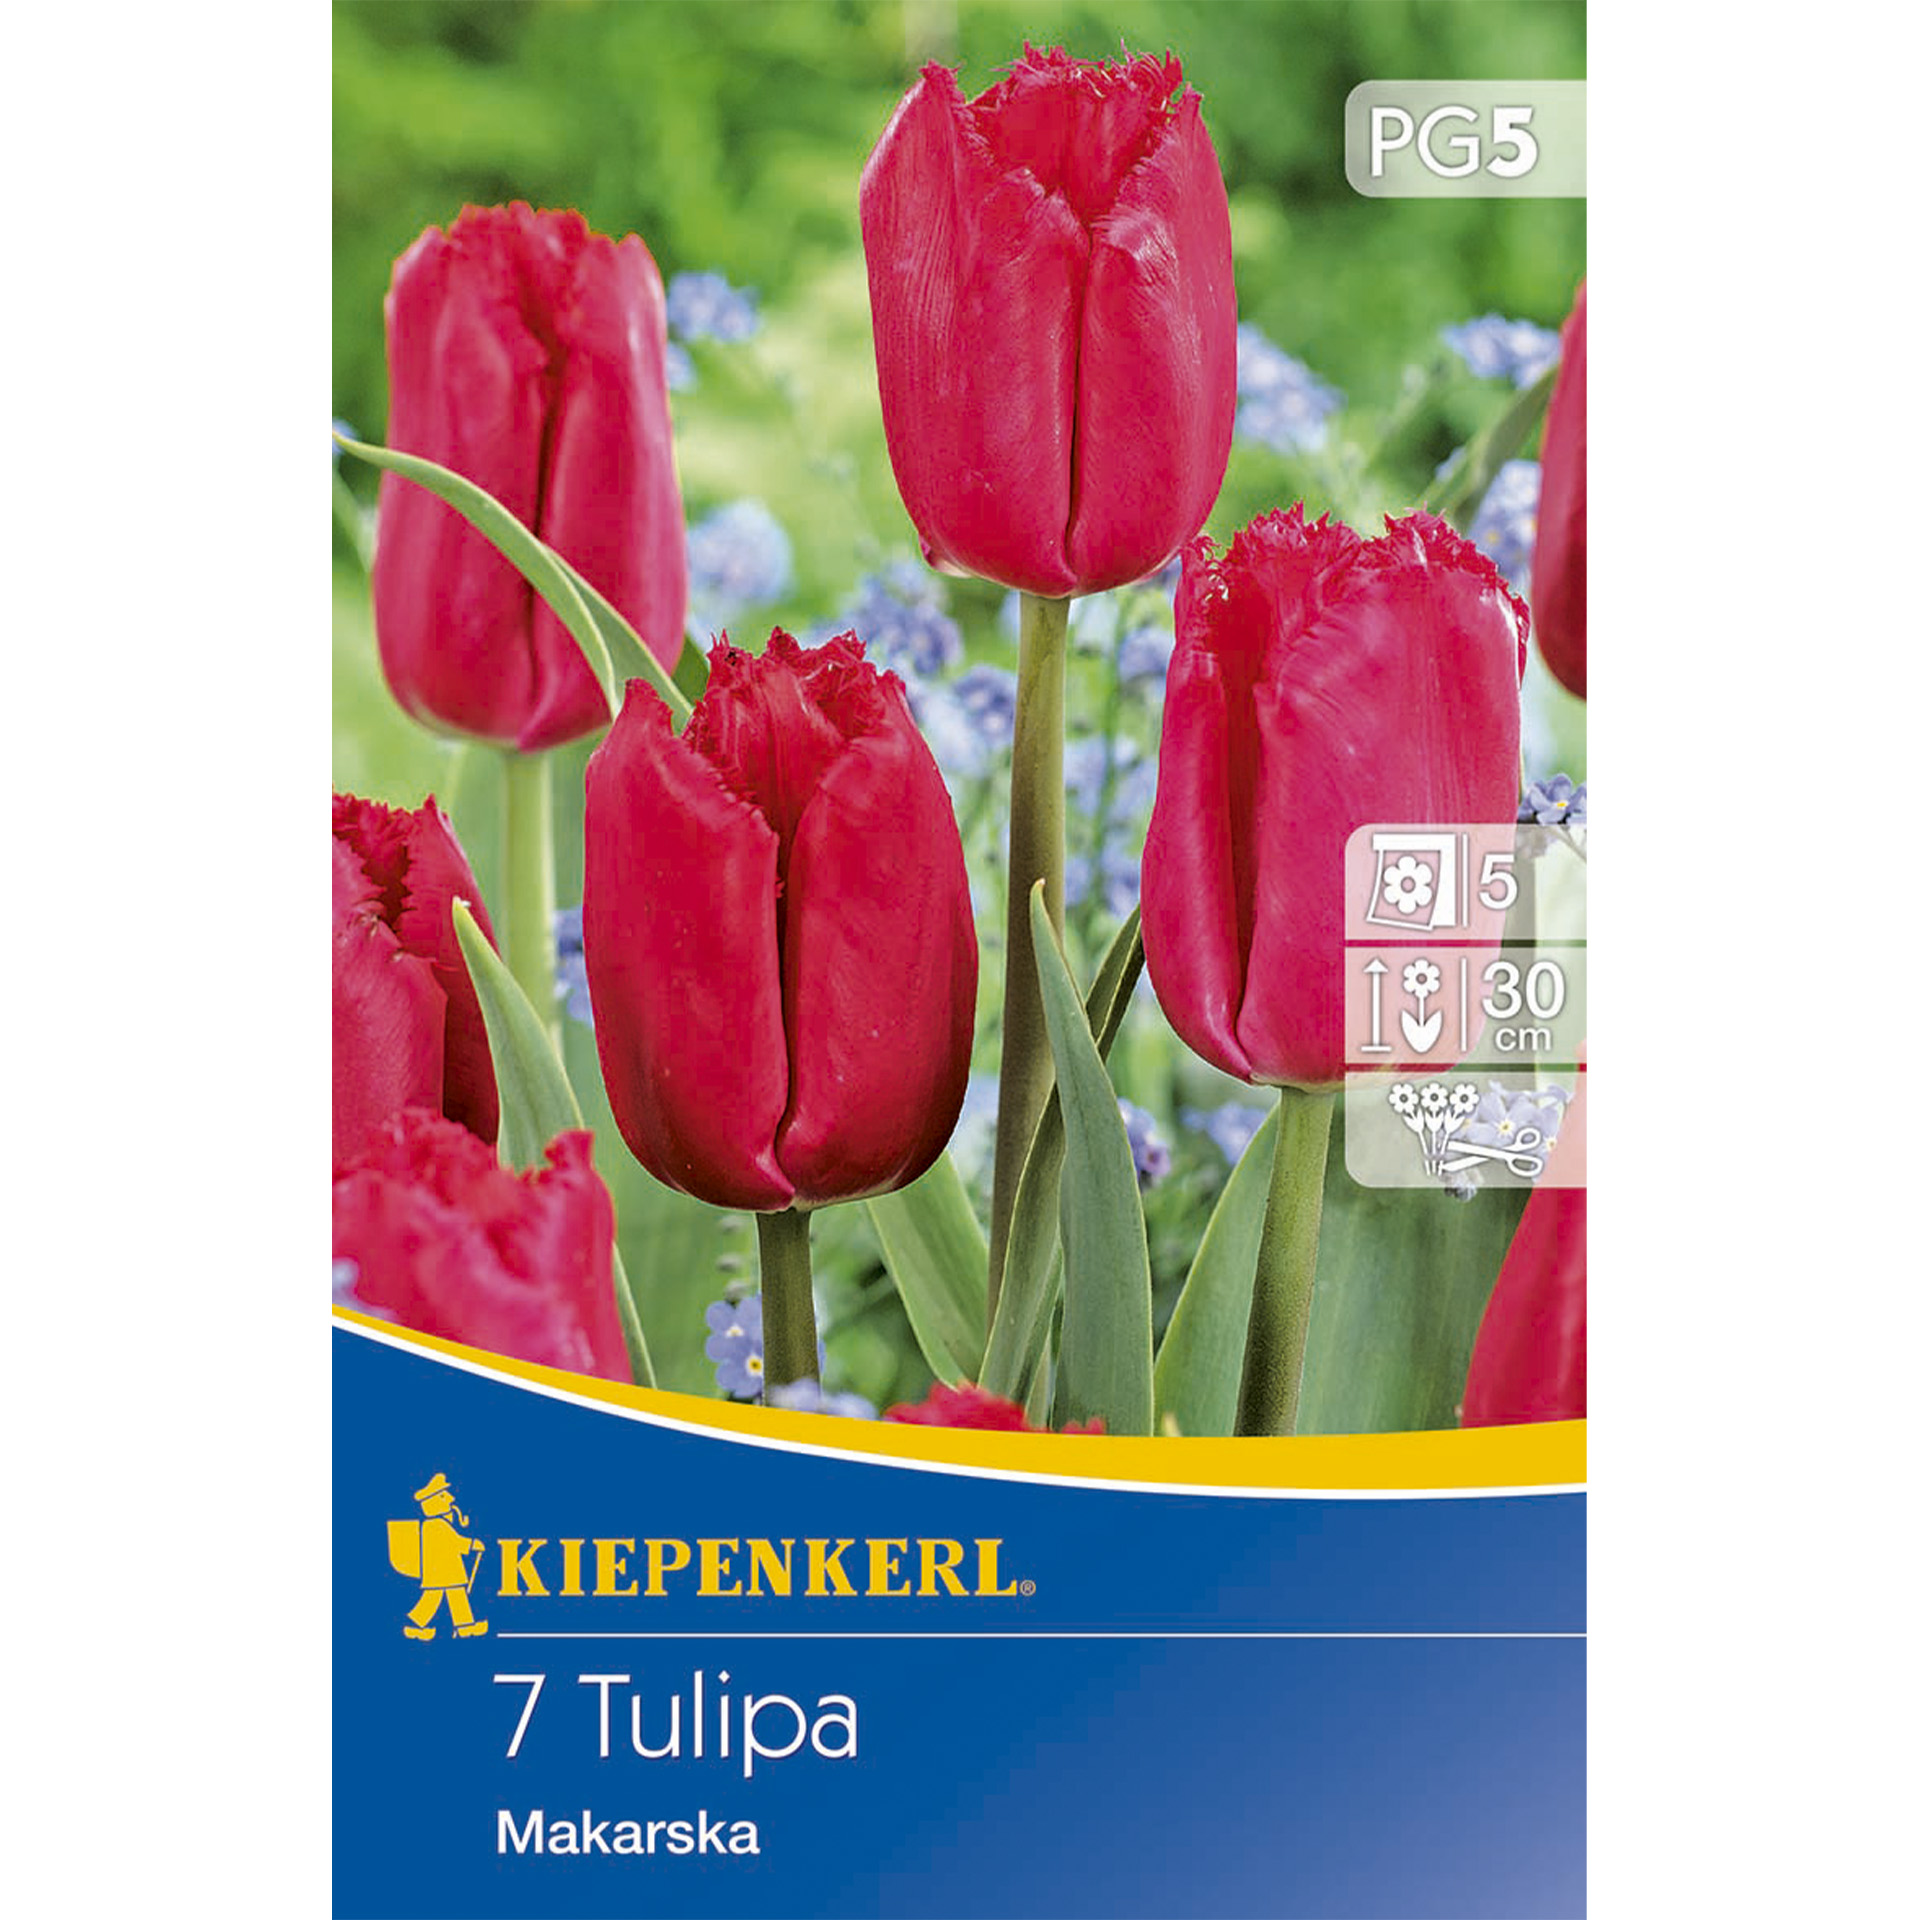 Tulpe mit leuchtend rosa-roten, gefransten Blütenblättern